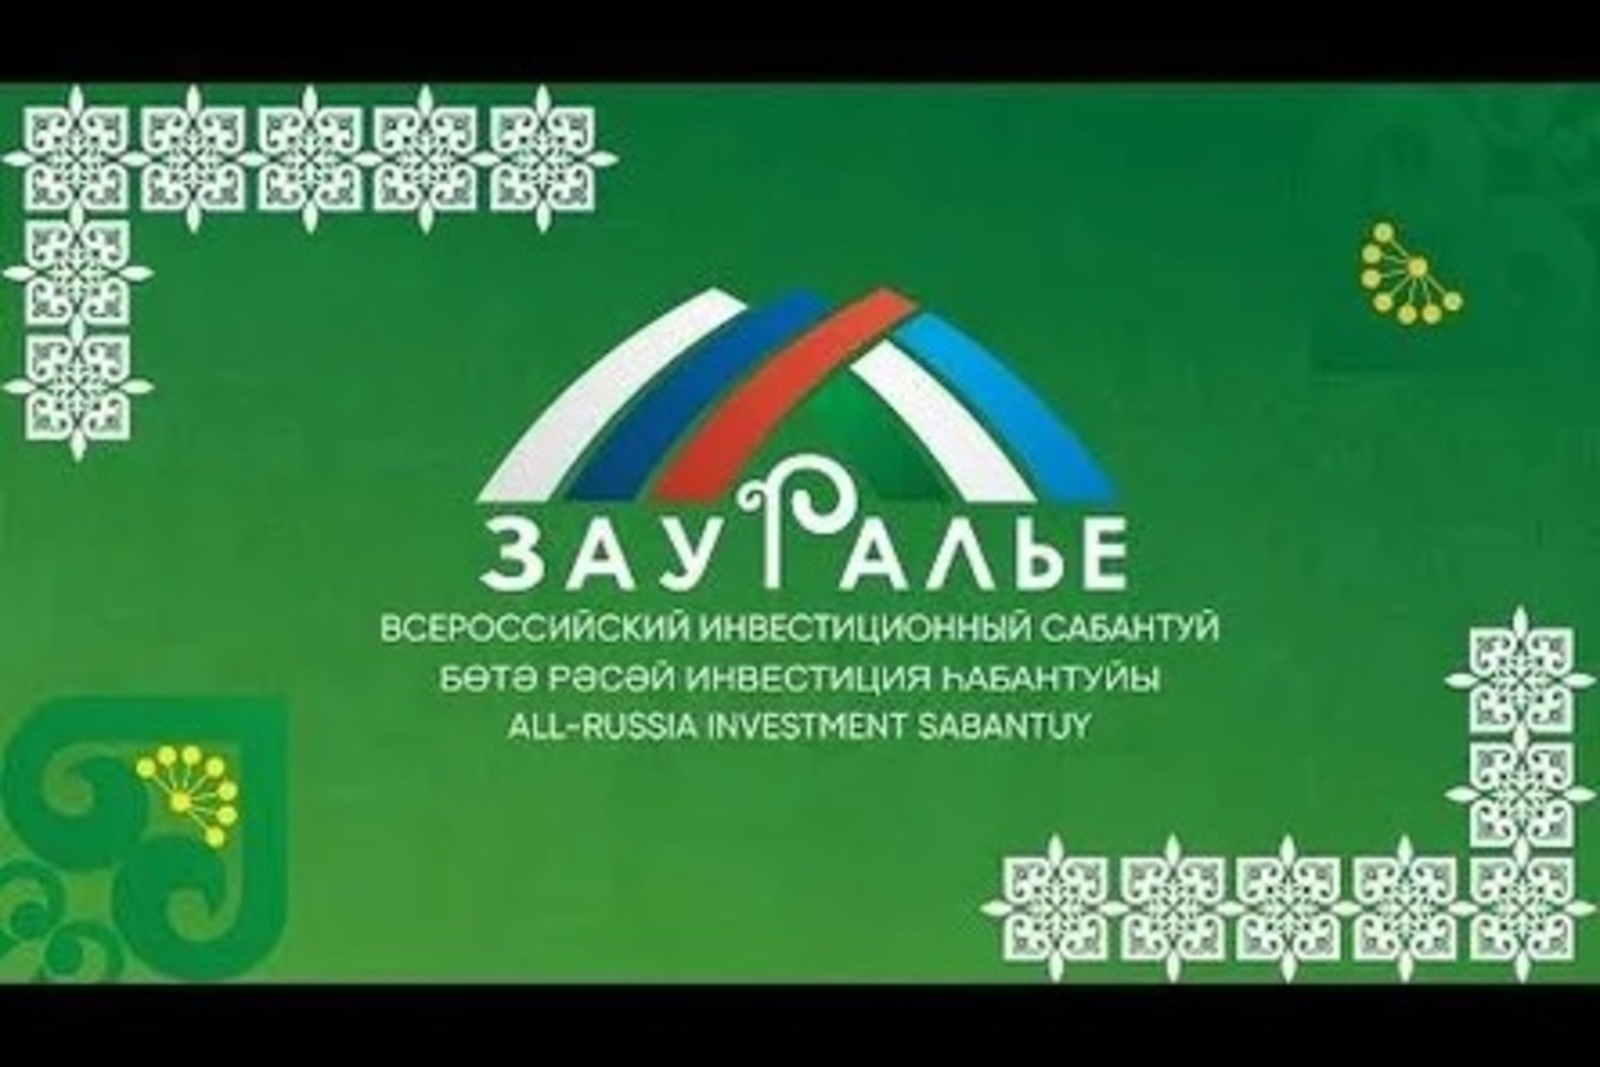 До начала Всероссийского инвестиционного сабантуя «Зауралье» — всего 2 дня!